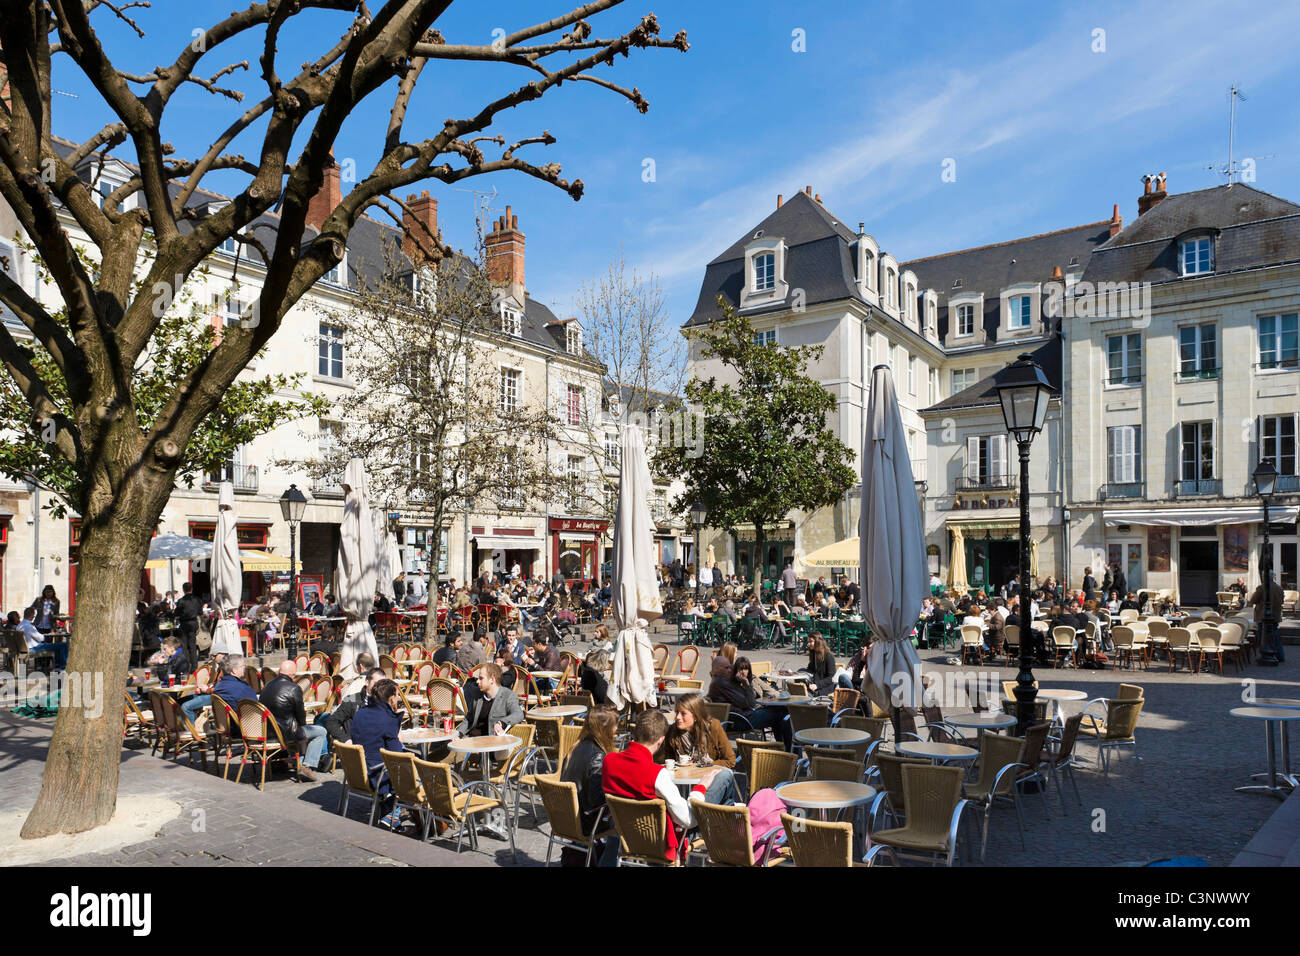 Les cafés de la Place Plumereau dans le vieux quartier de la ville, Tours, Indre et Loire, France Banque D'Images